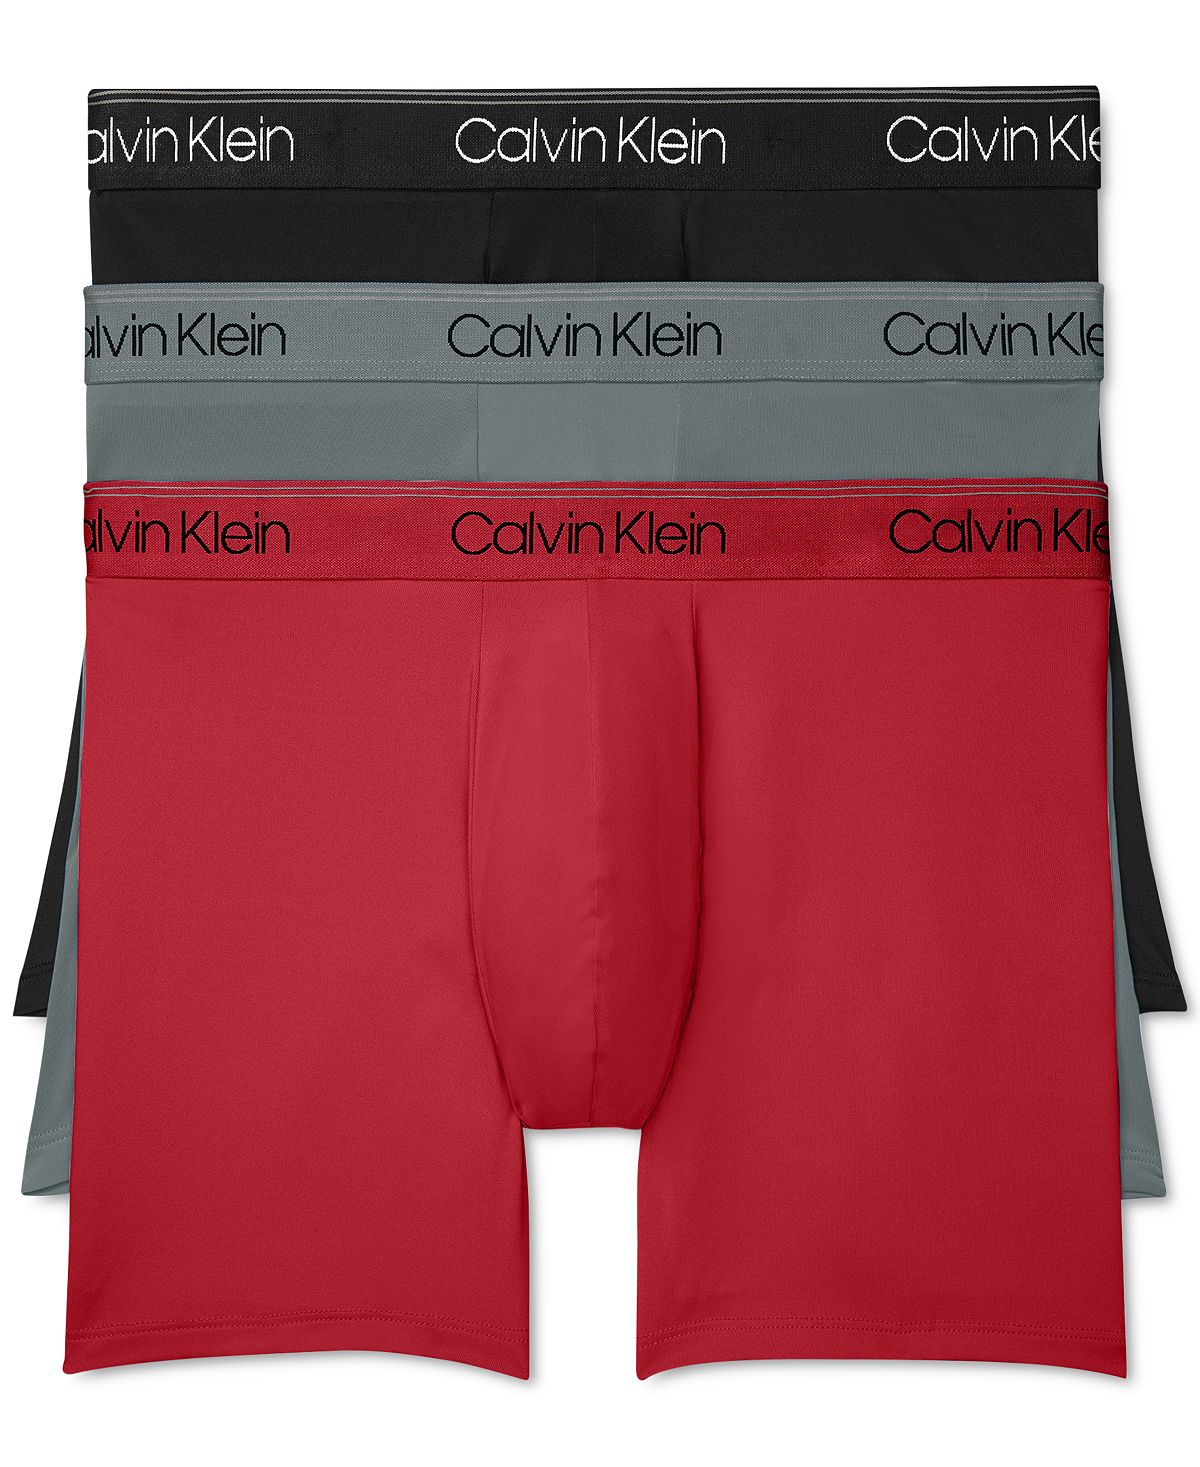 Мужские трусы-боксеры из микрофибры (3 пары), нижнее белье Calvin Klein